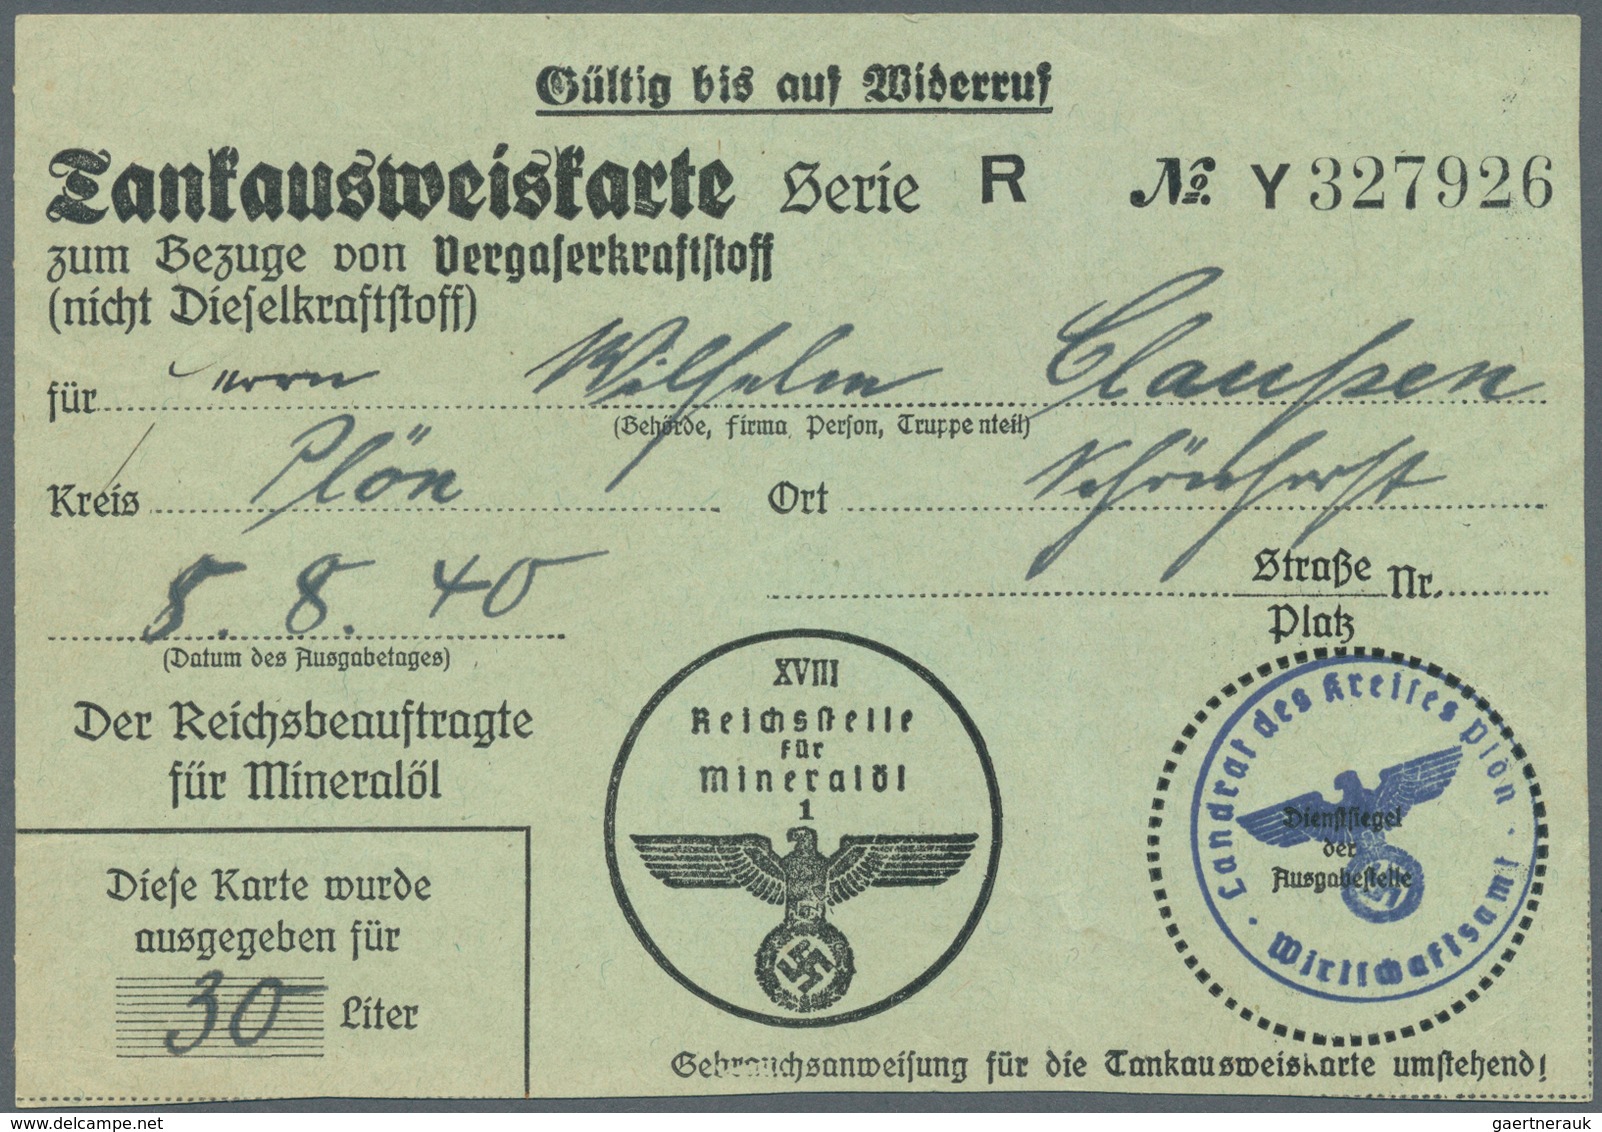 Deutsches Reich - Besonderheiten: 1933/1945, Belege und Dokumente abseits der reinen Markenfrankatur